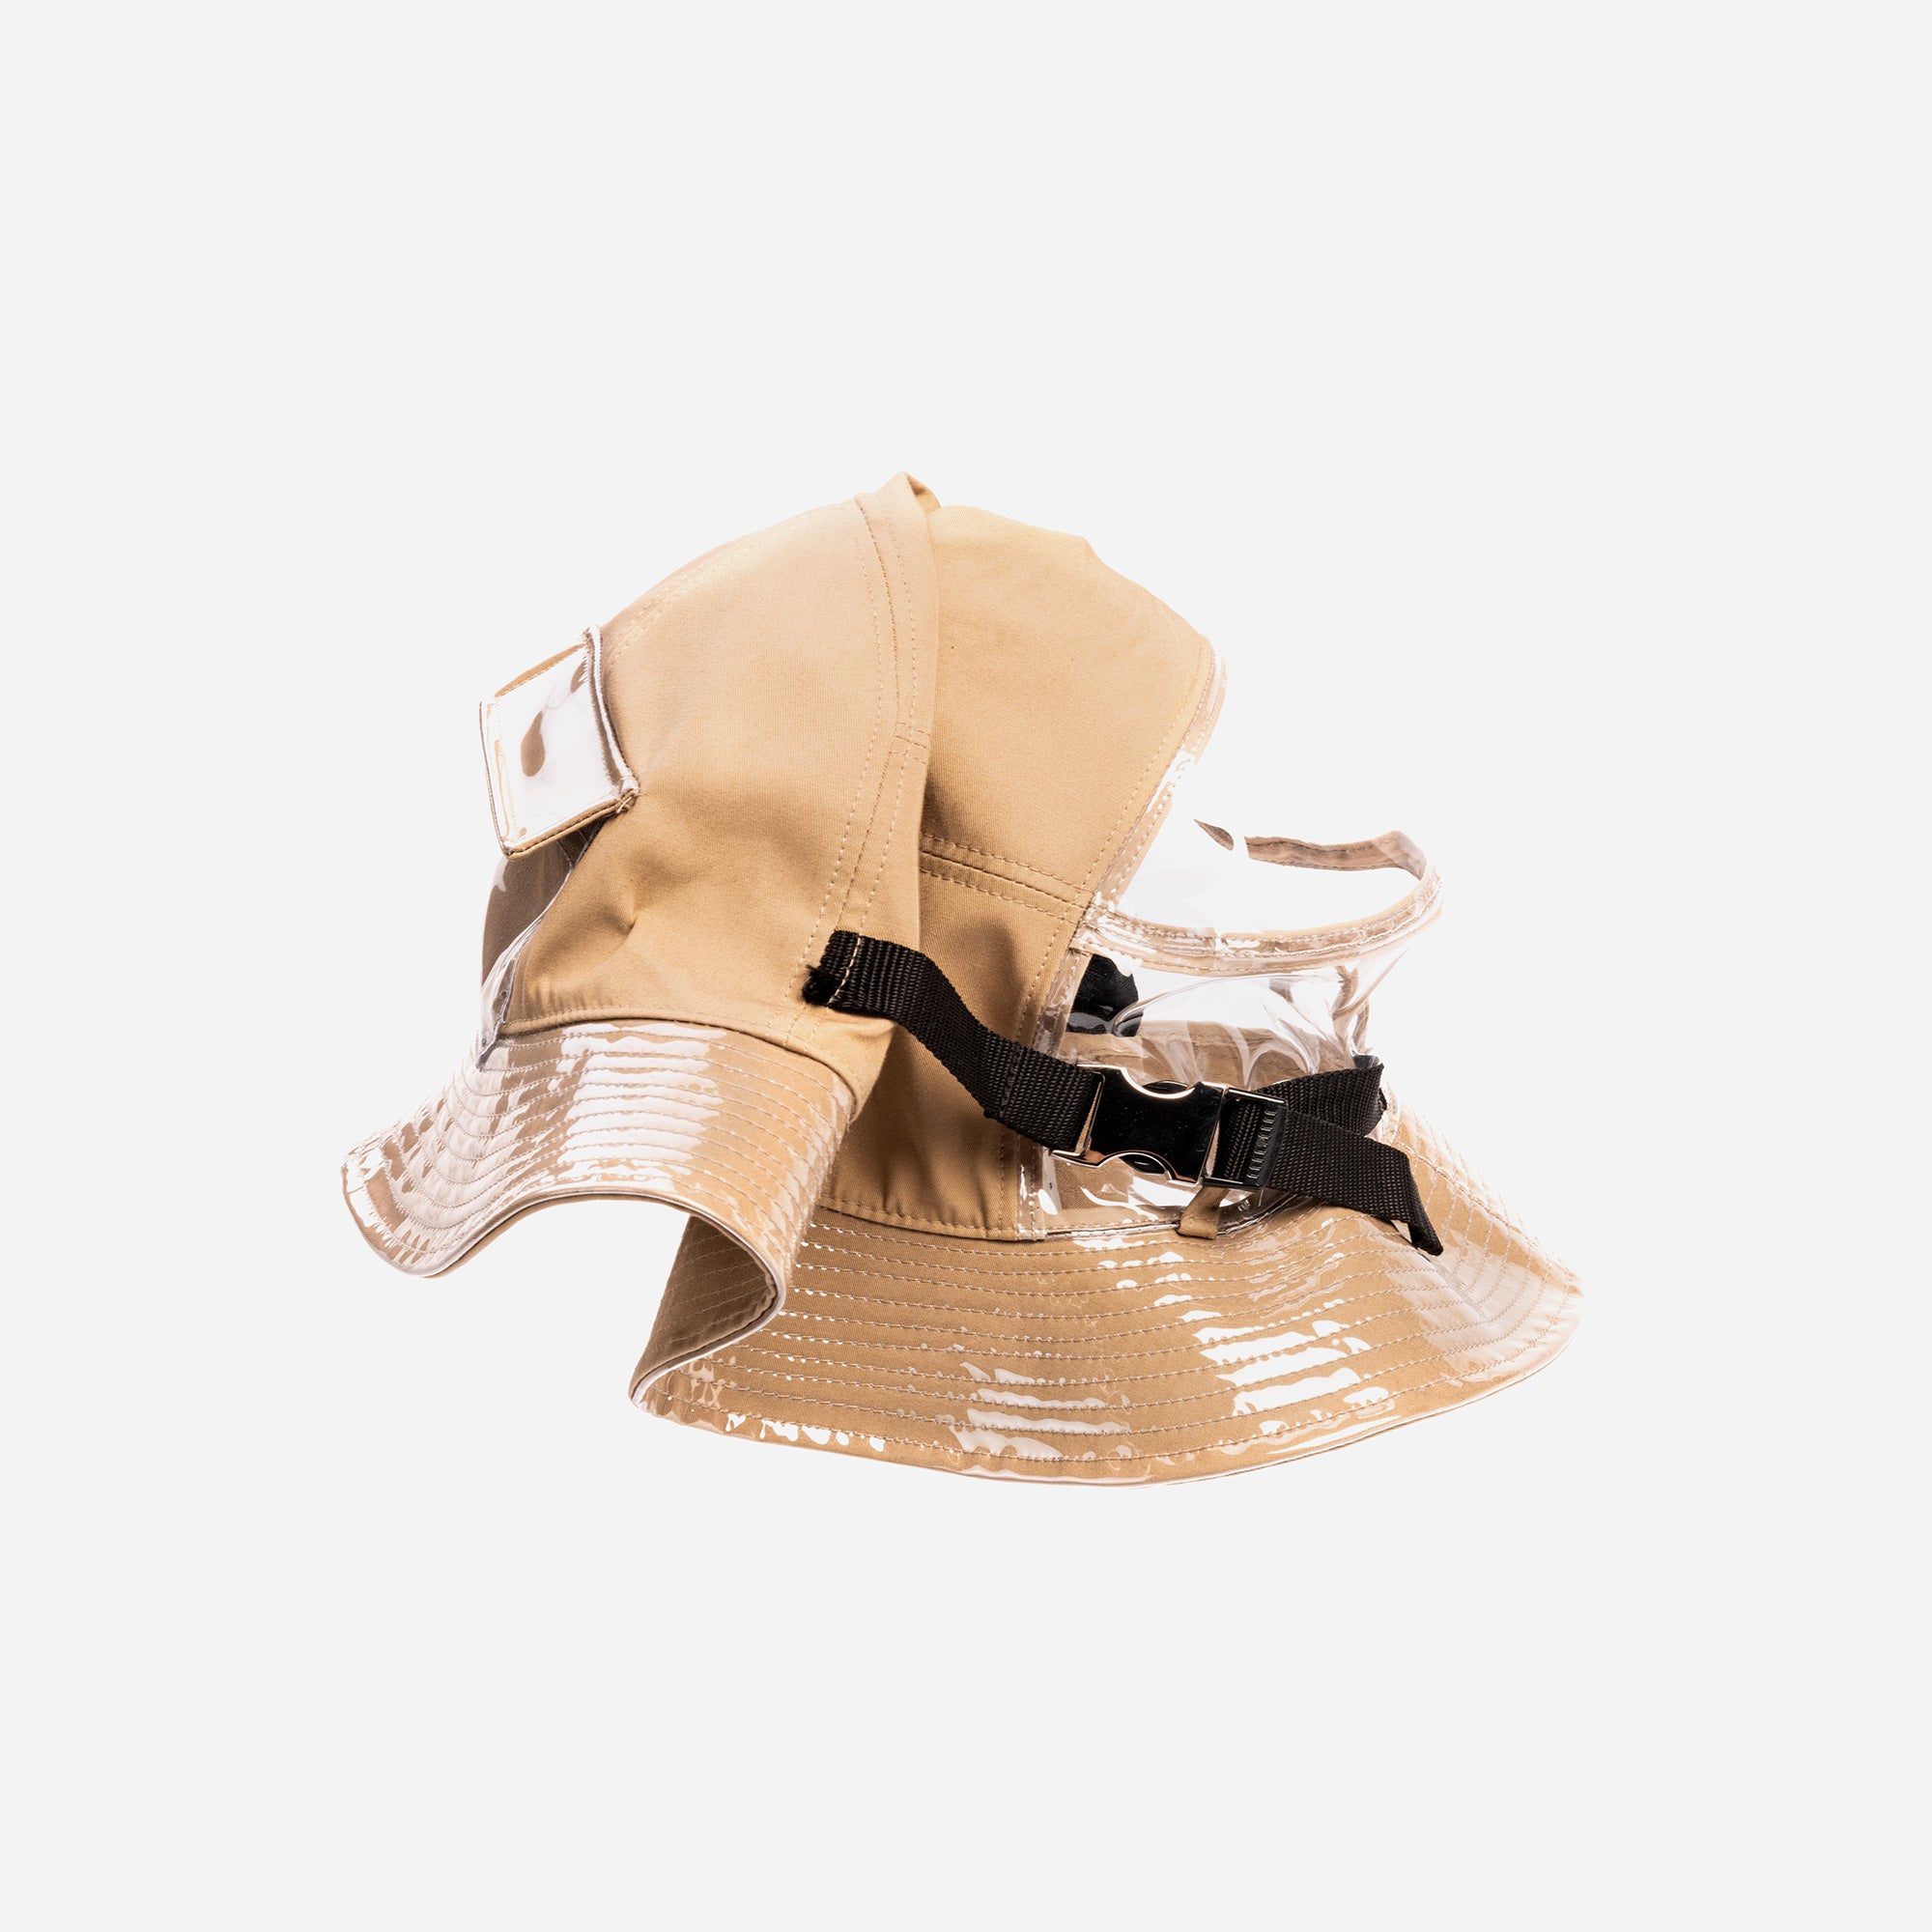 PVMX Bucket Hat black and beige